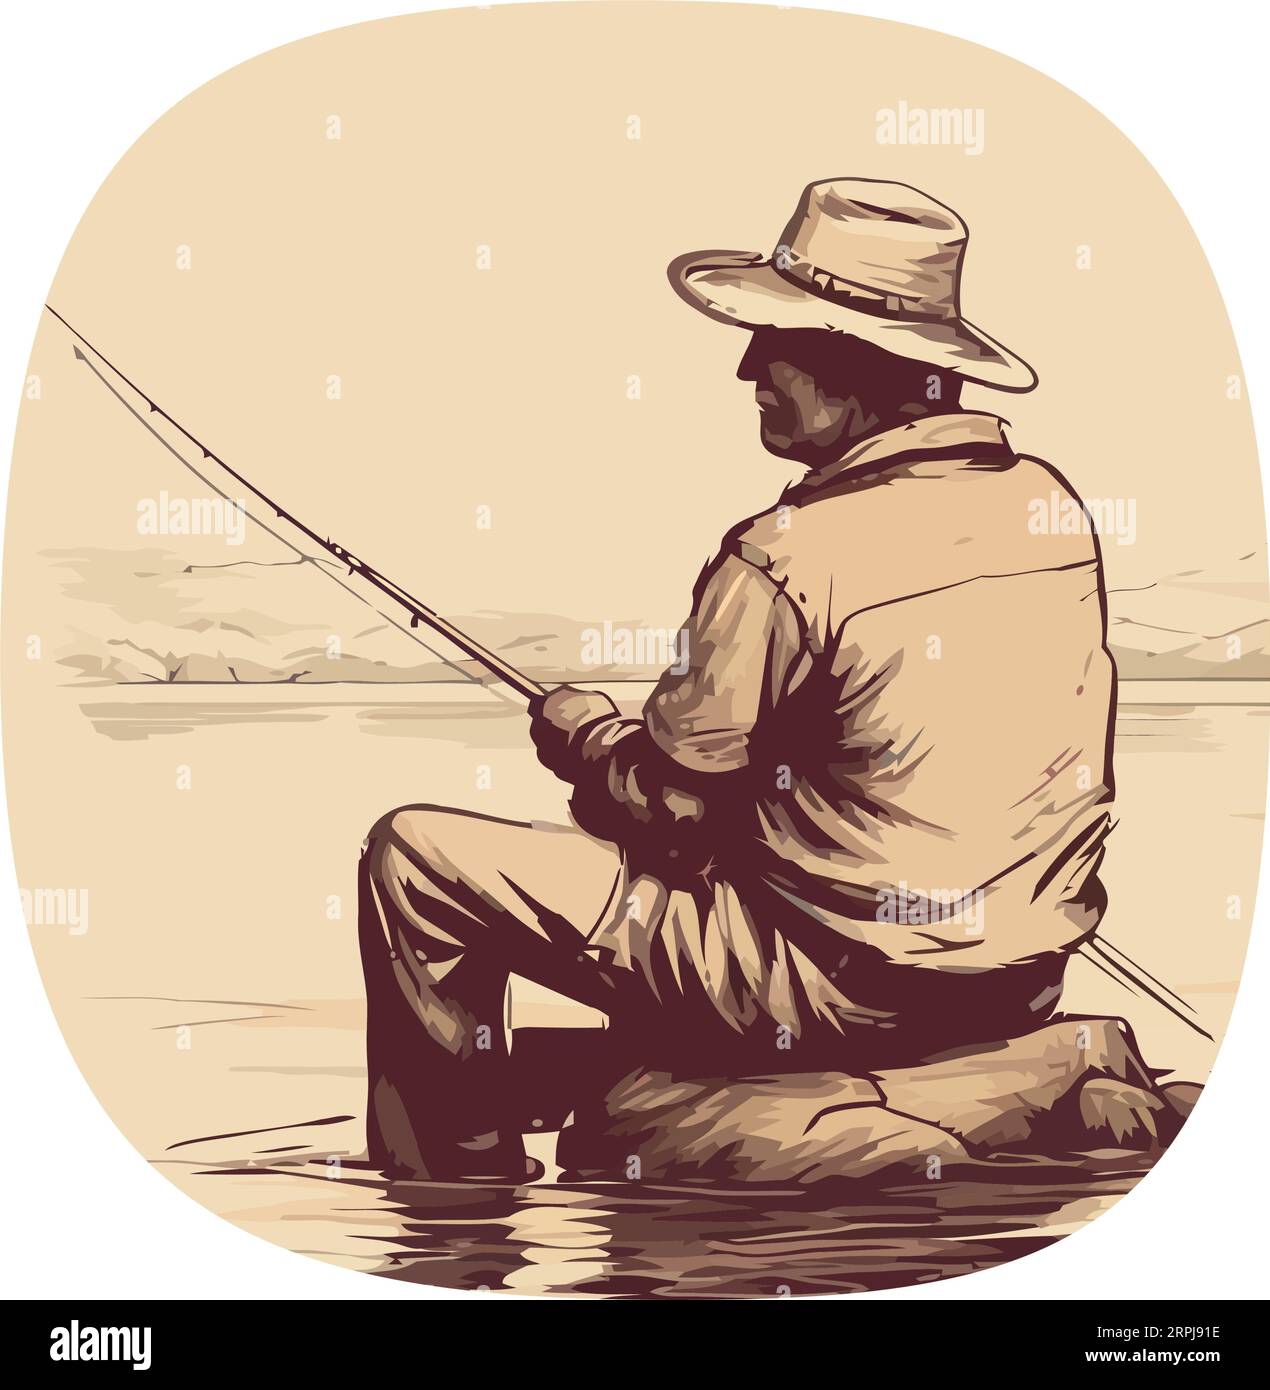 un homme tenant une canne à pêche sur blanc Illustration de Vecteur